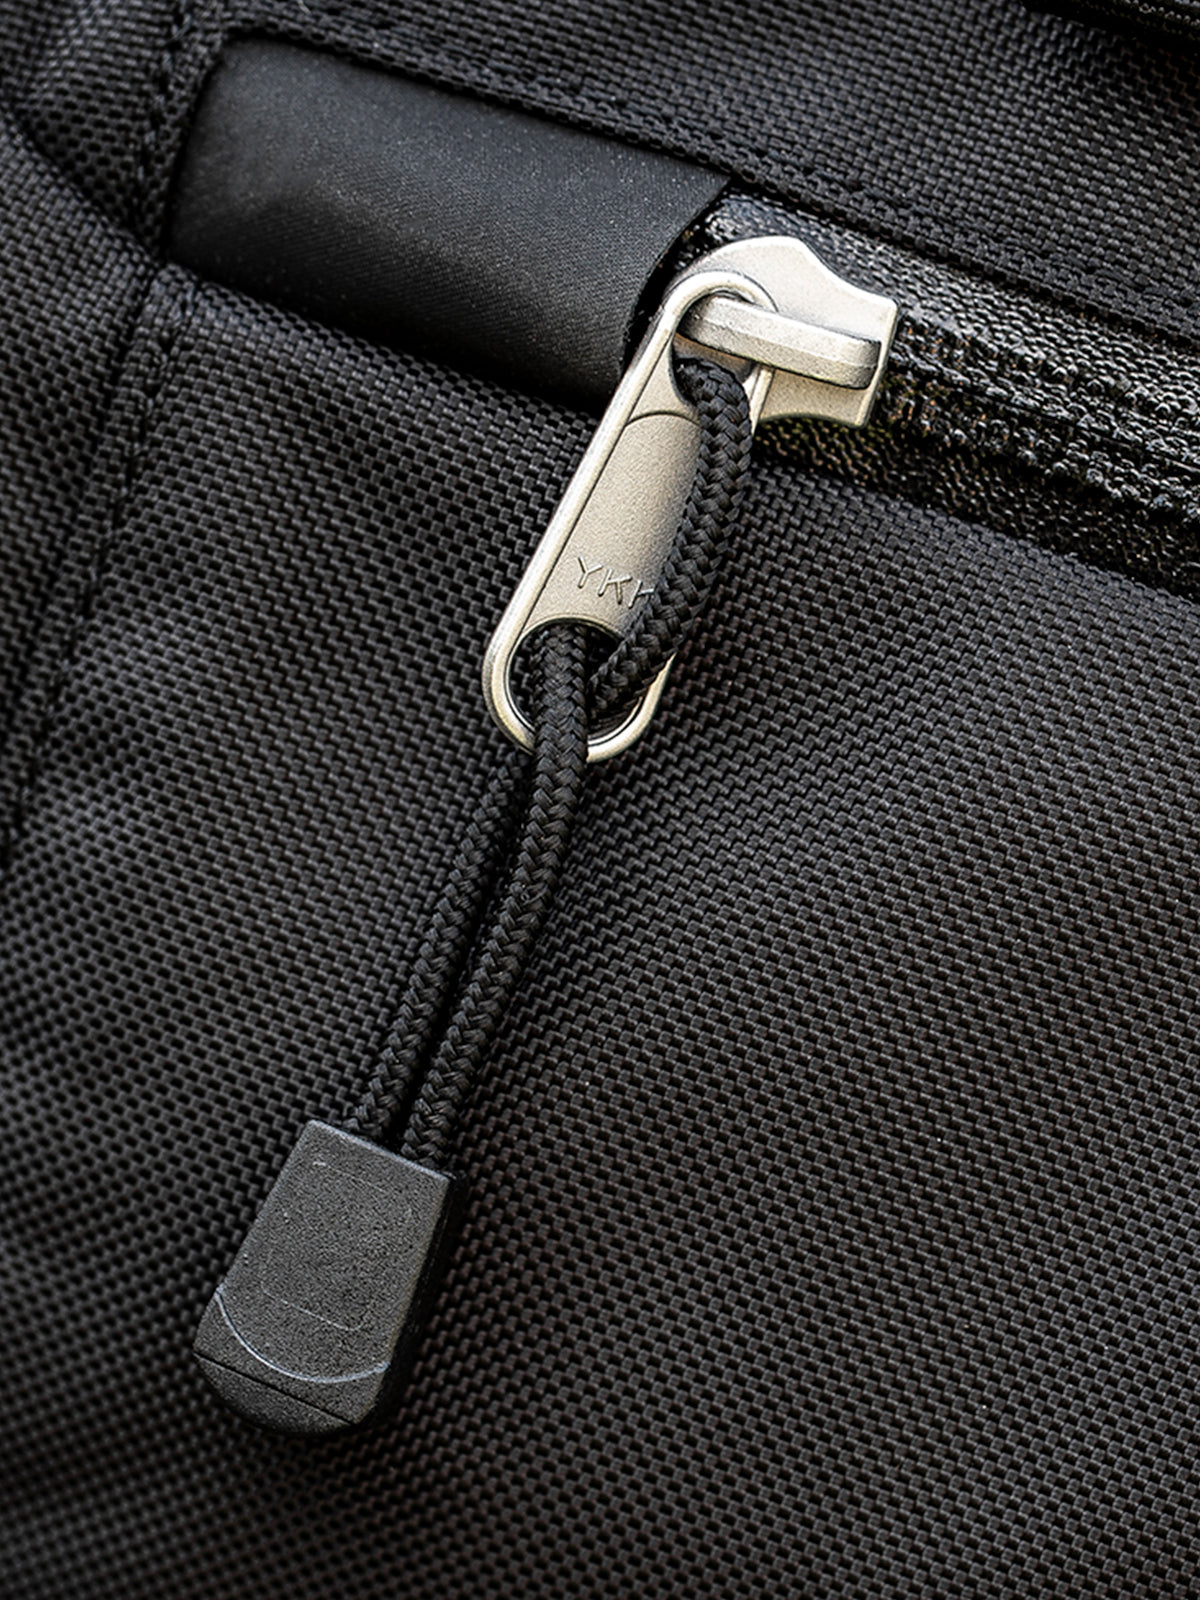 Kriega US10 Drypack YKK zip